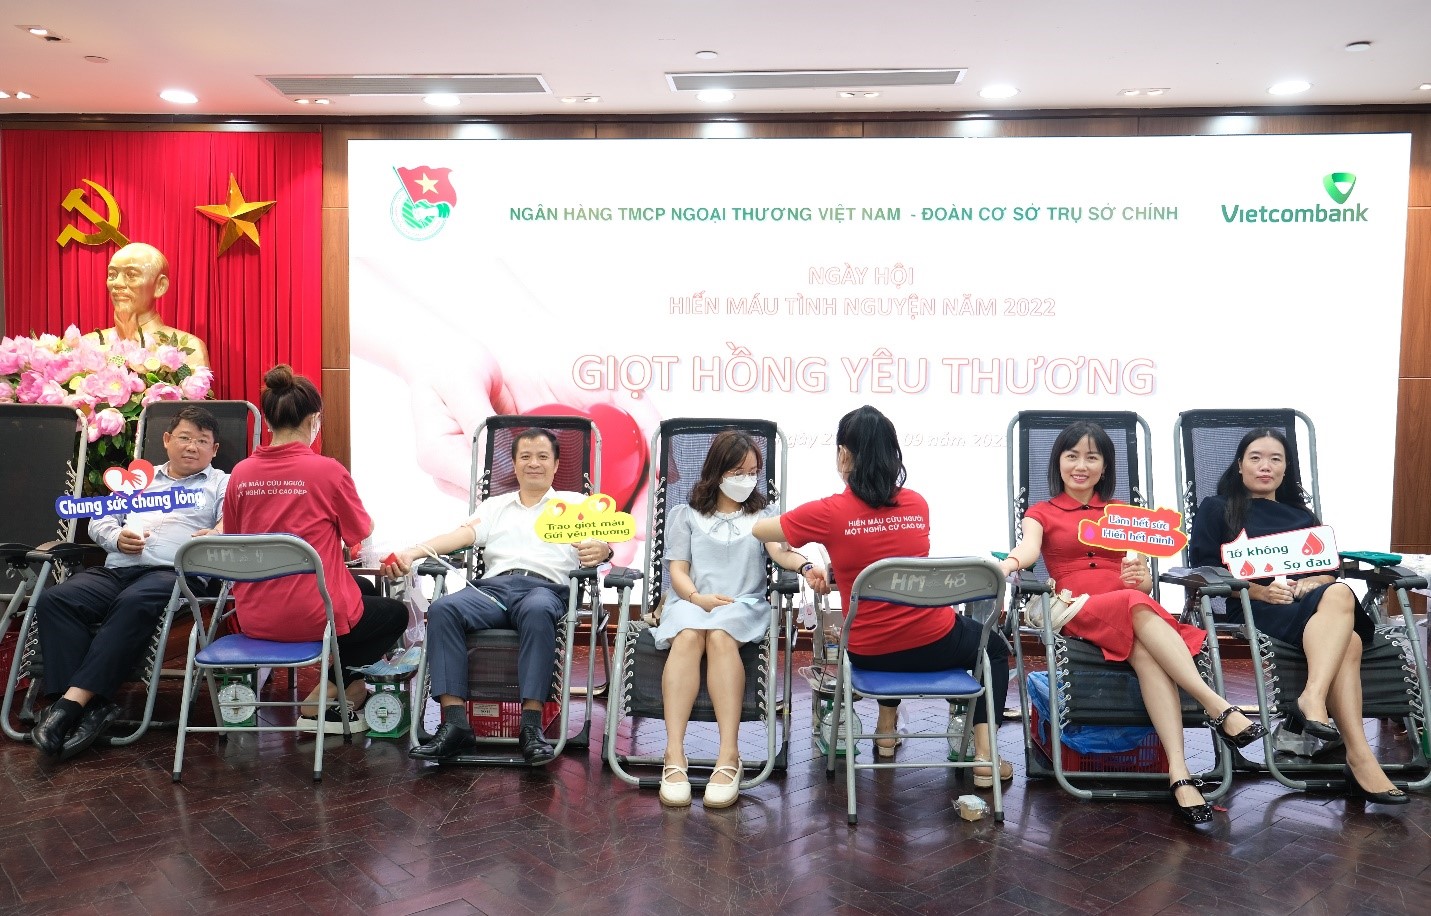 Đoàn thanh niên Vietcombank Trụ sở chính tổ chức Ngày hội hiến máu tình nguyện “Giọt hồng yêu thương” năm 2022